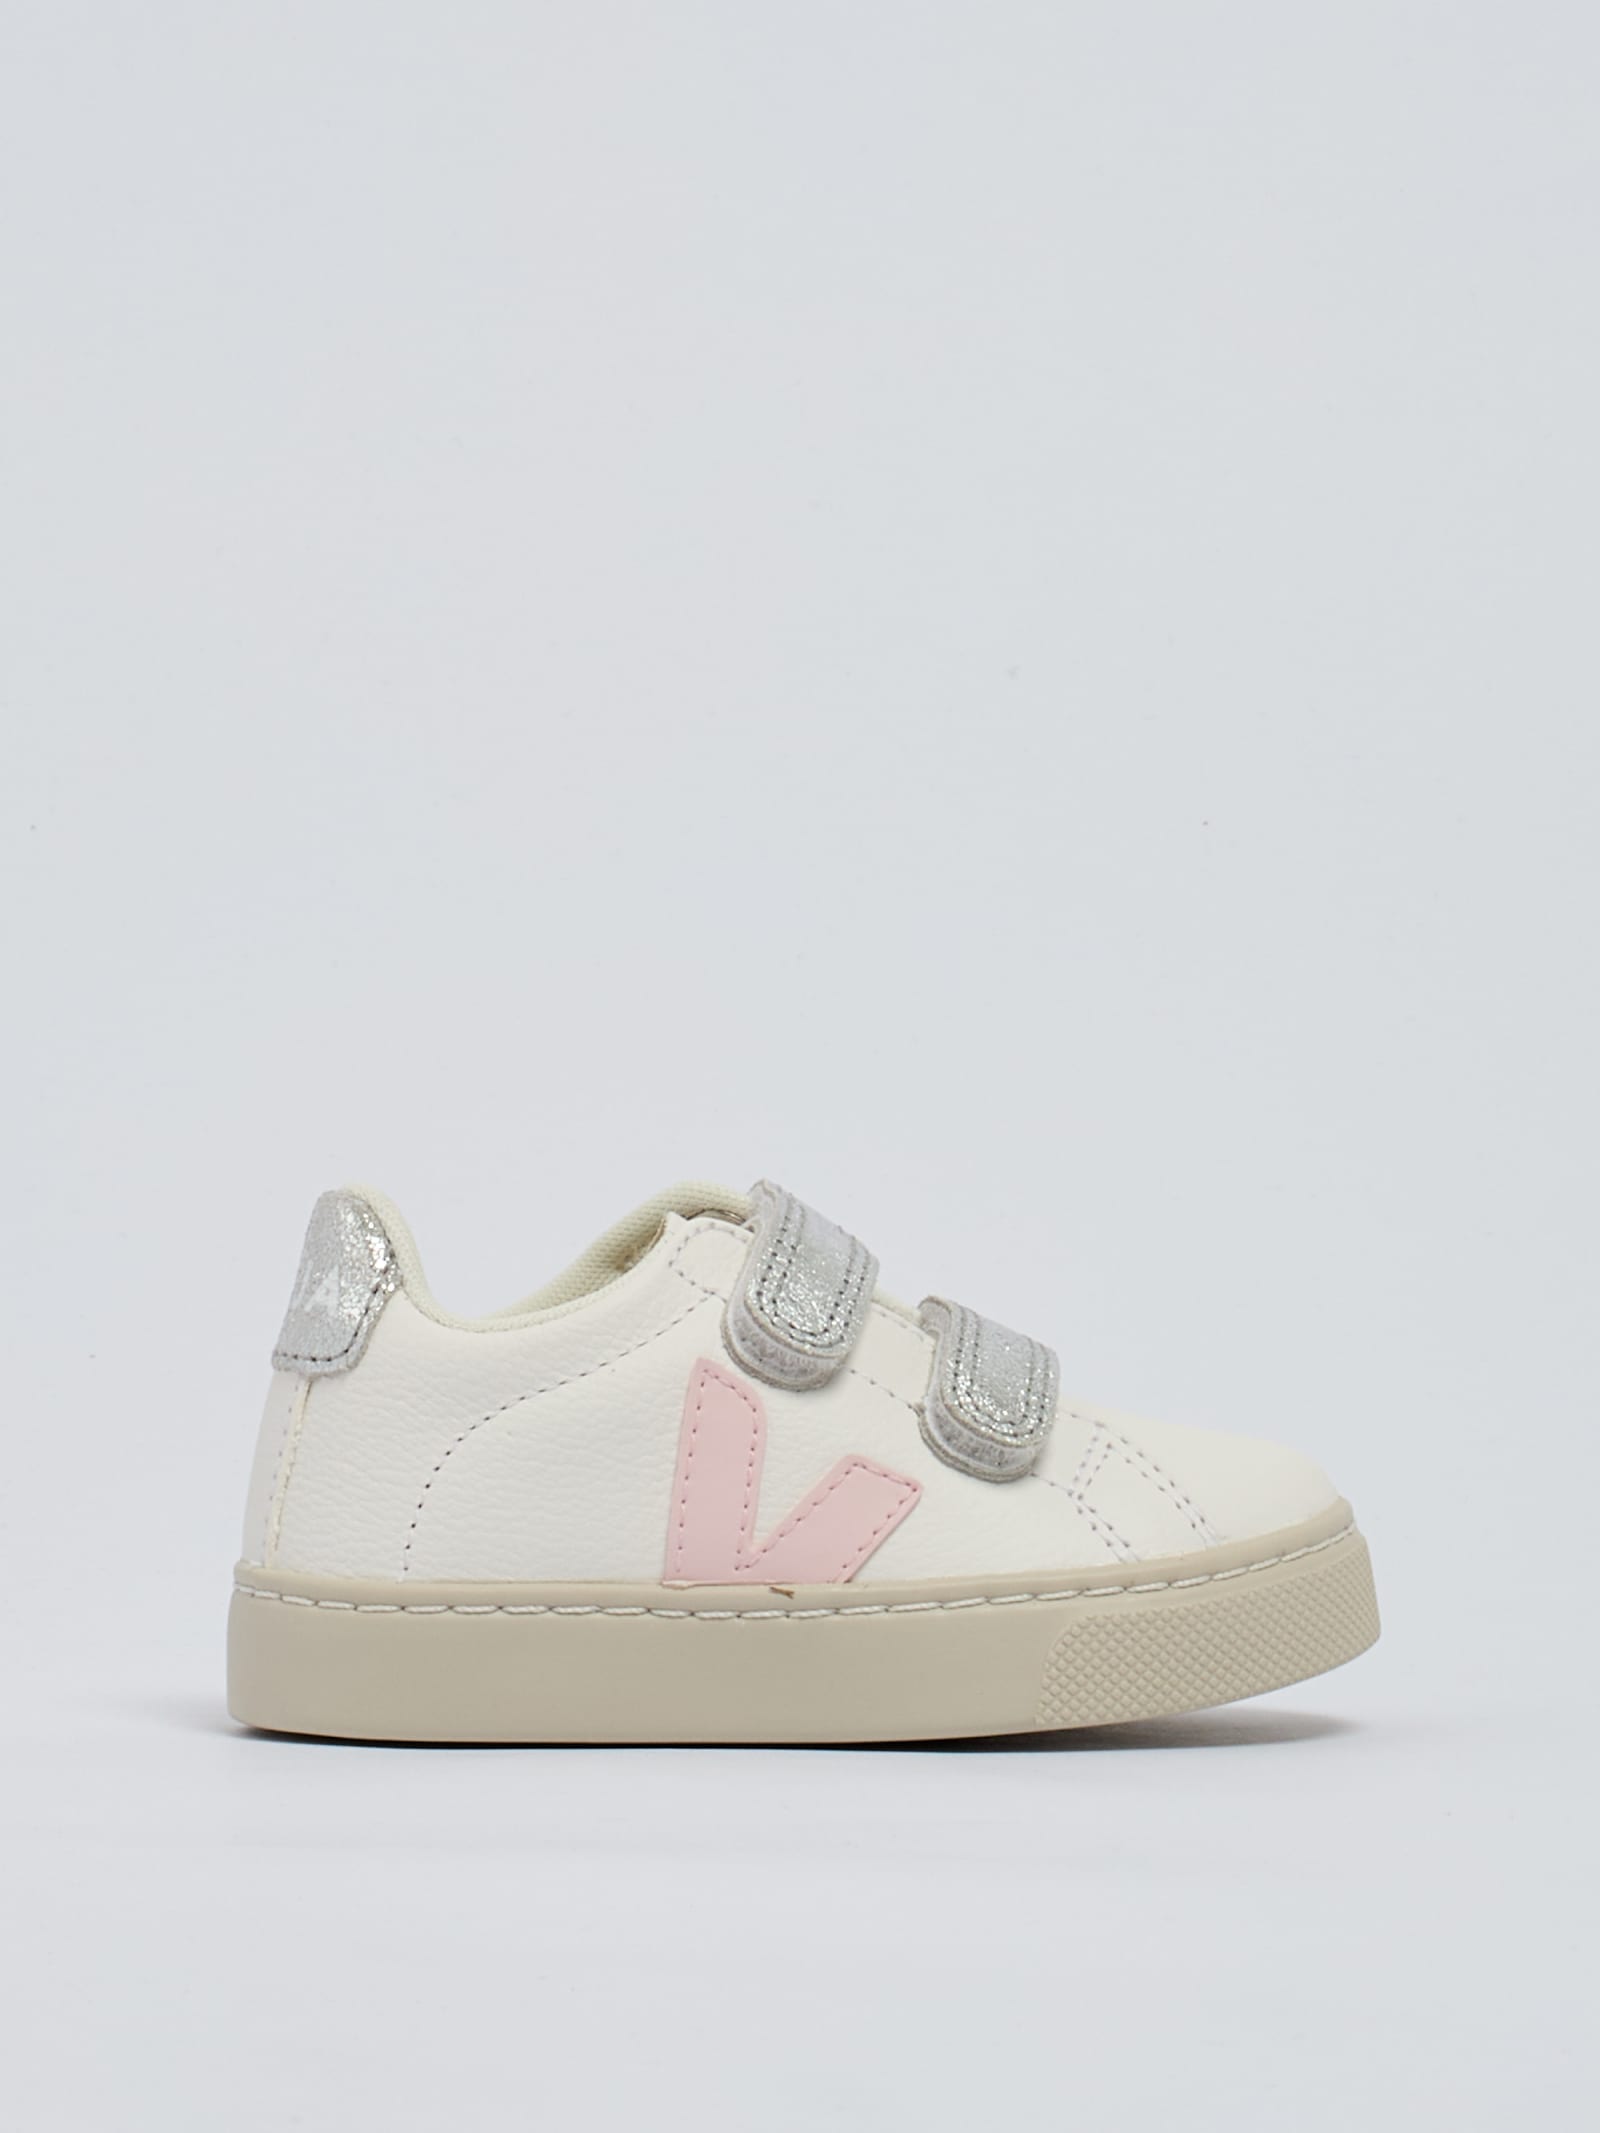 Veja Kids' Small Esplar Sneaker In Bianco-rosa